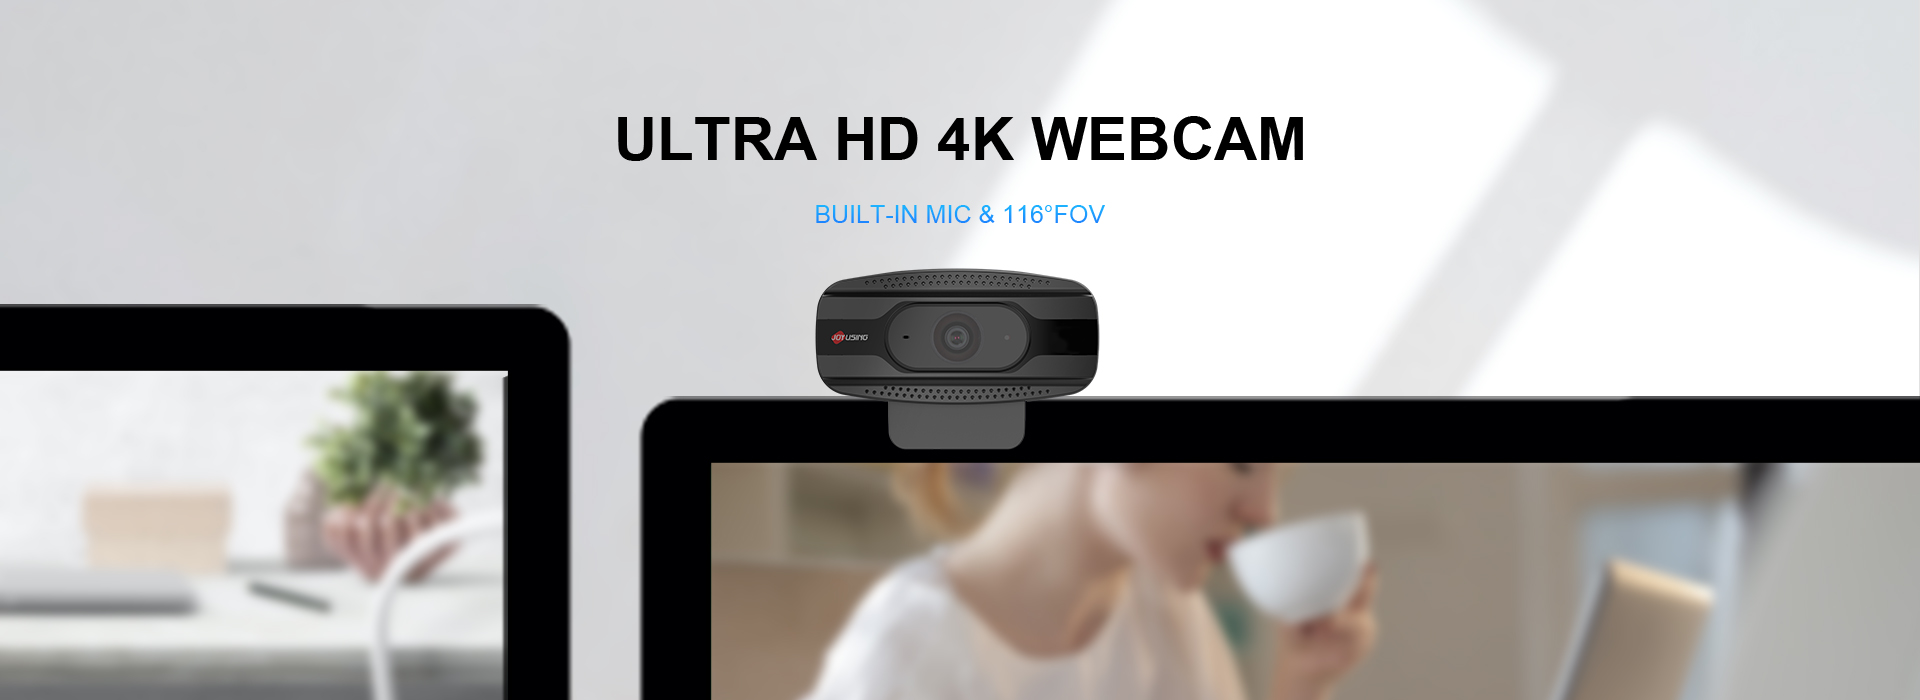 N800-4k-webcam